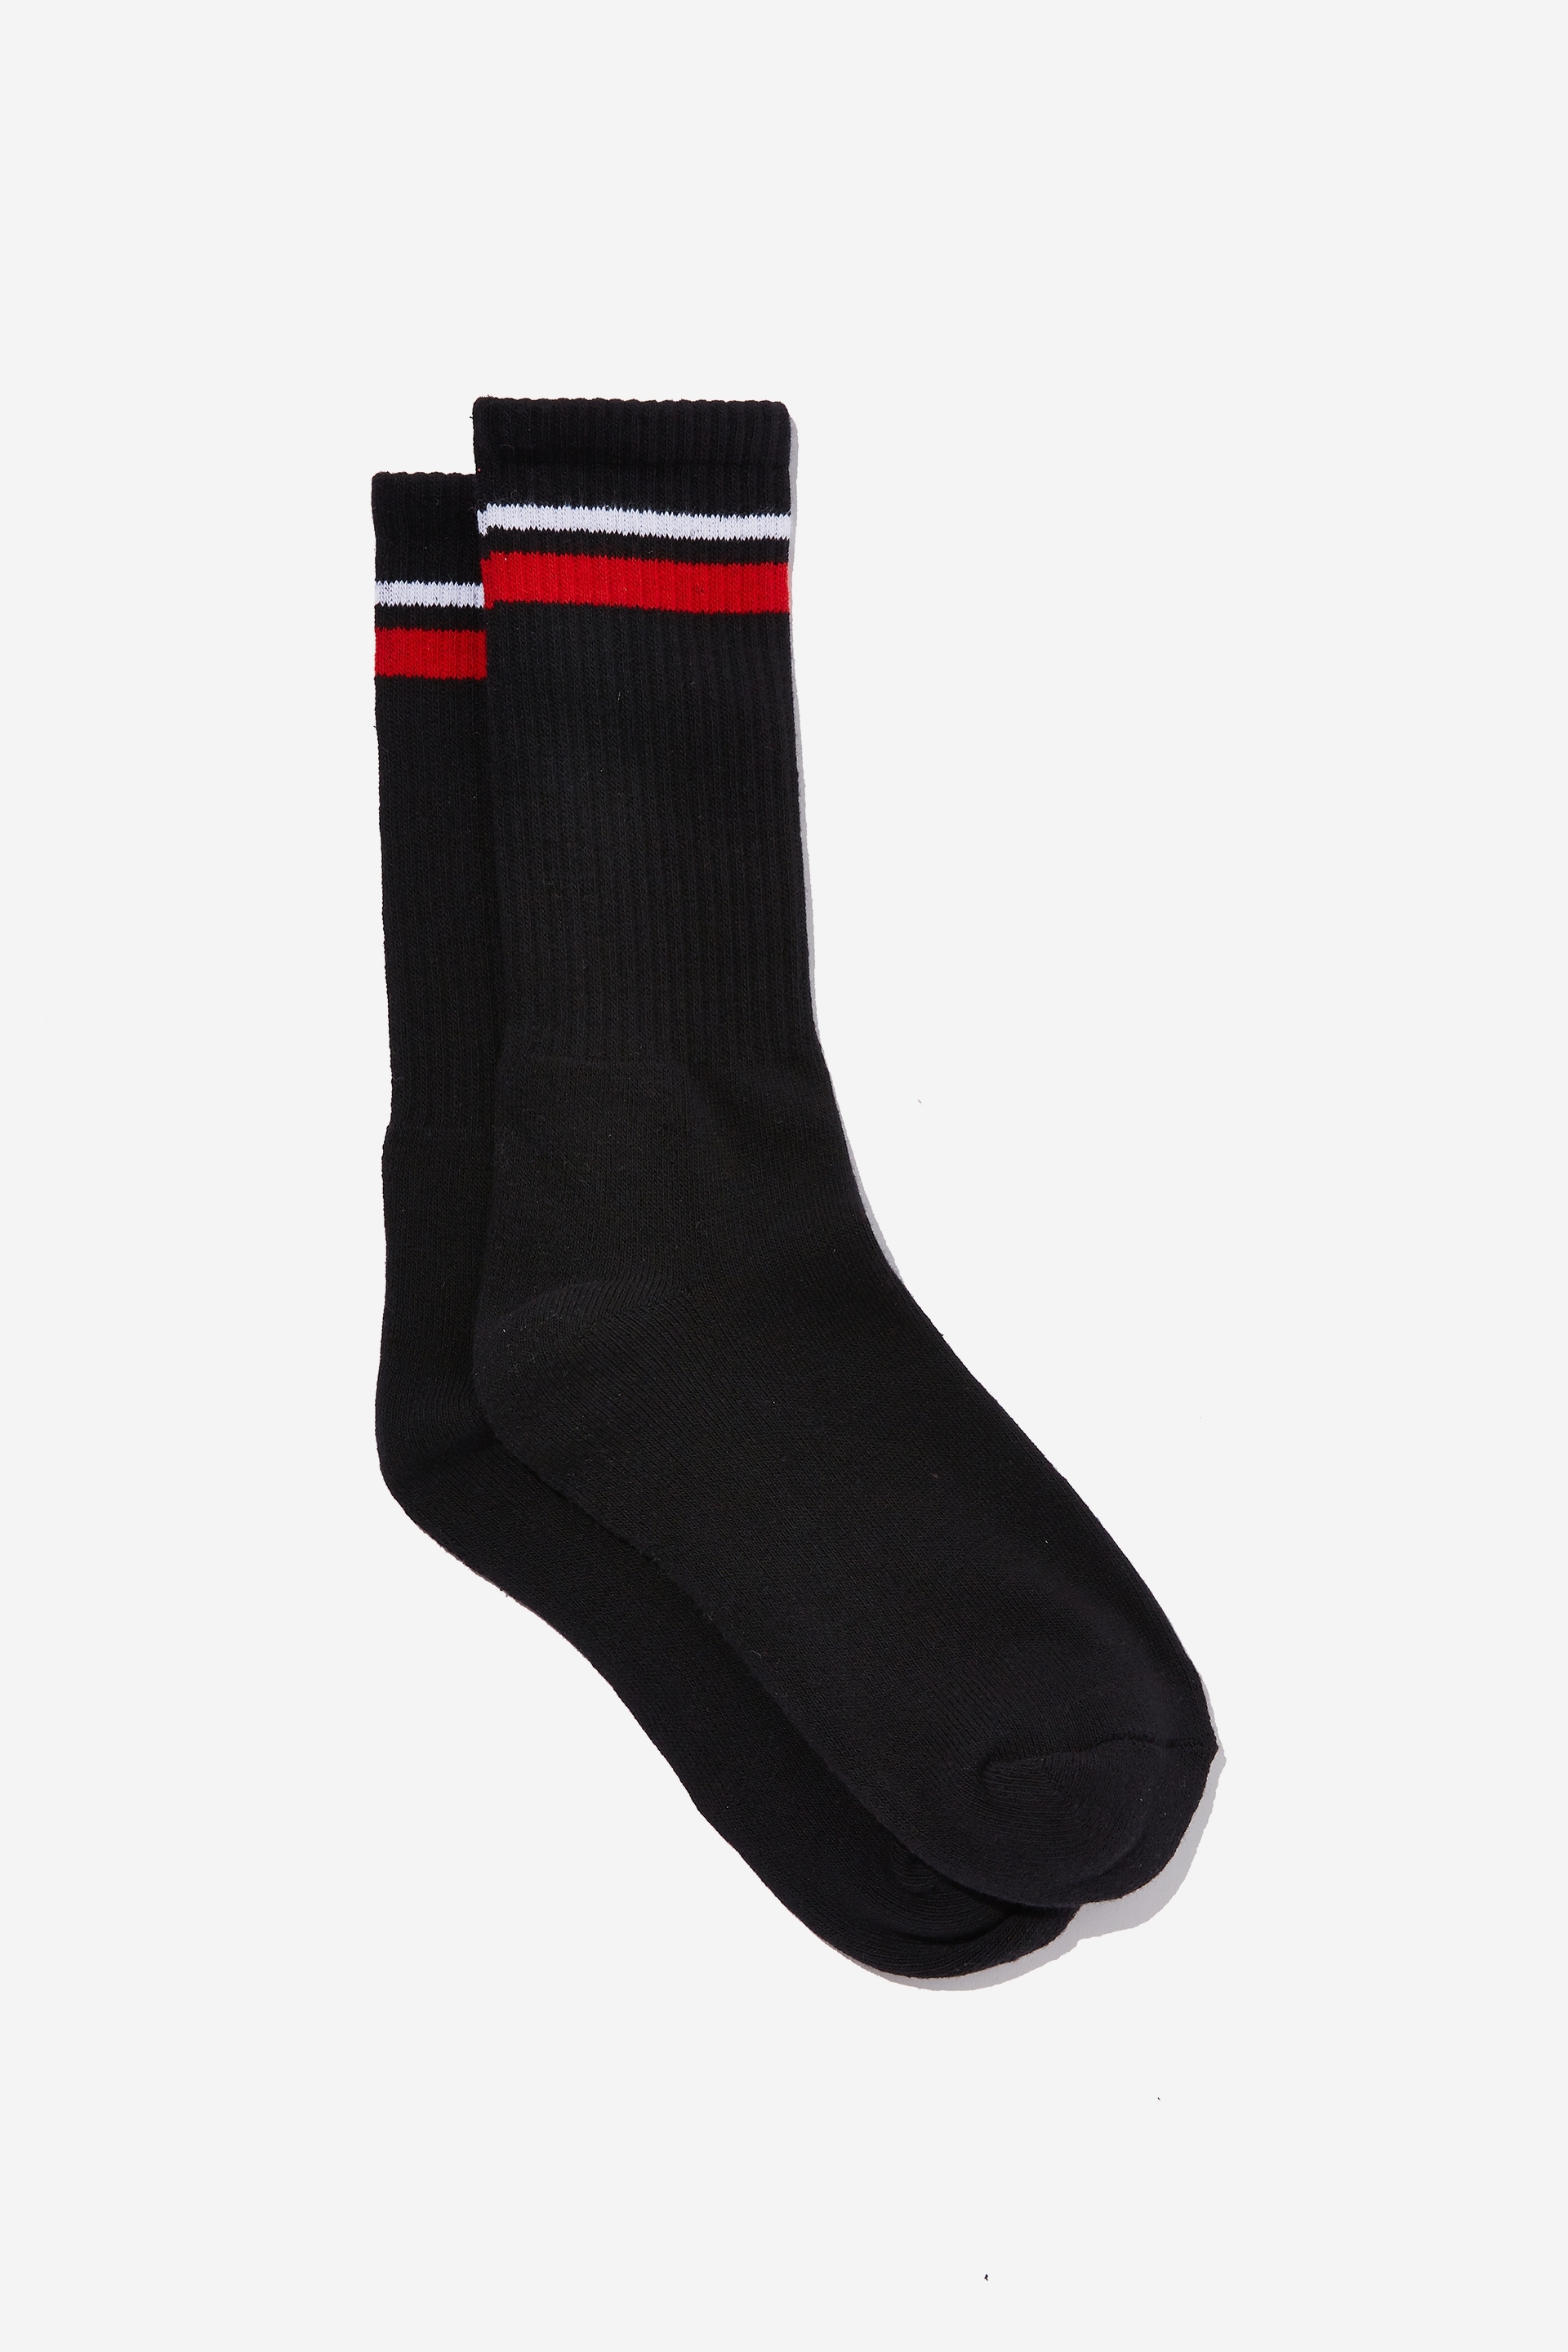 Factorie - Retro Ribbed Socks - Black red stripe